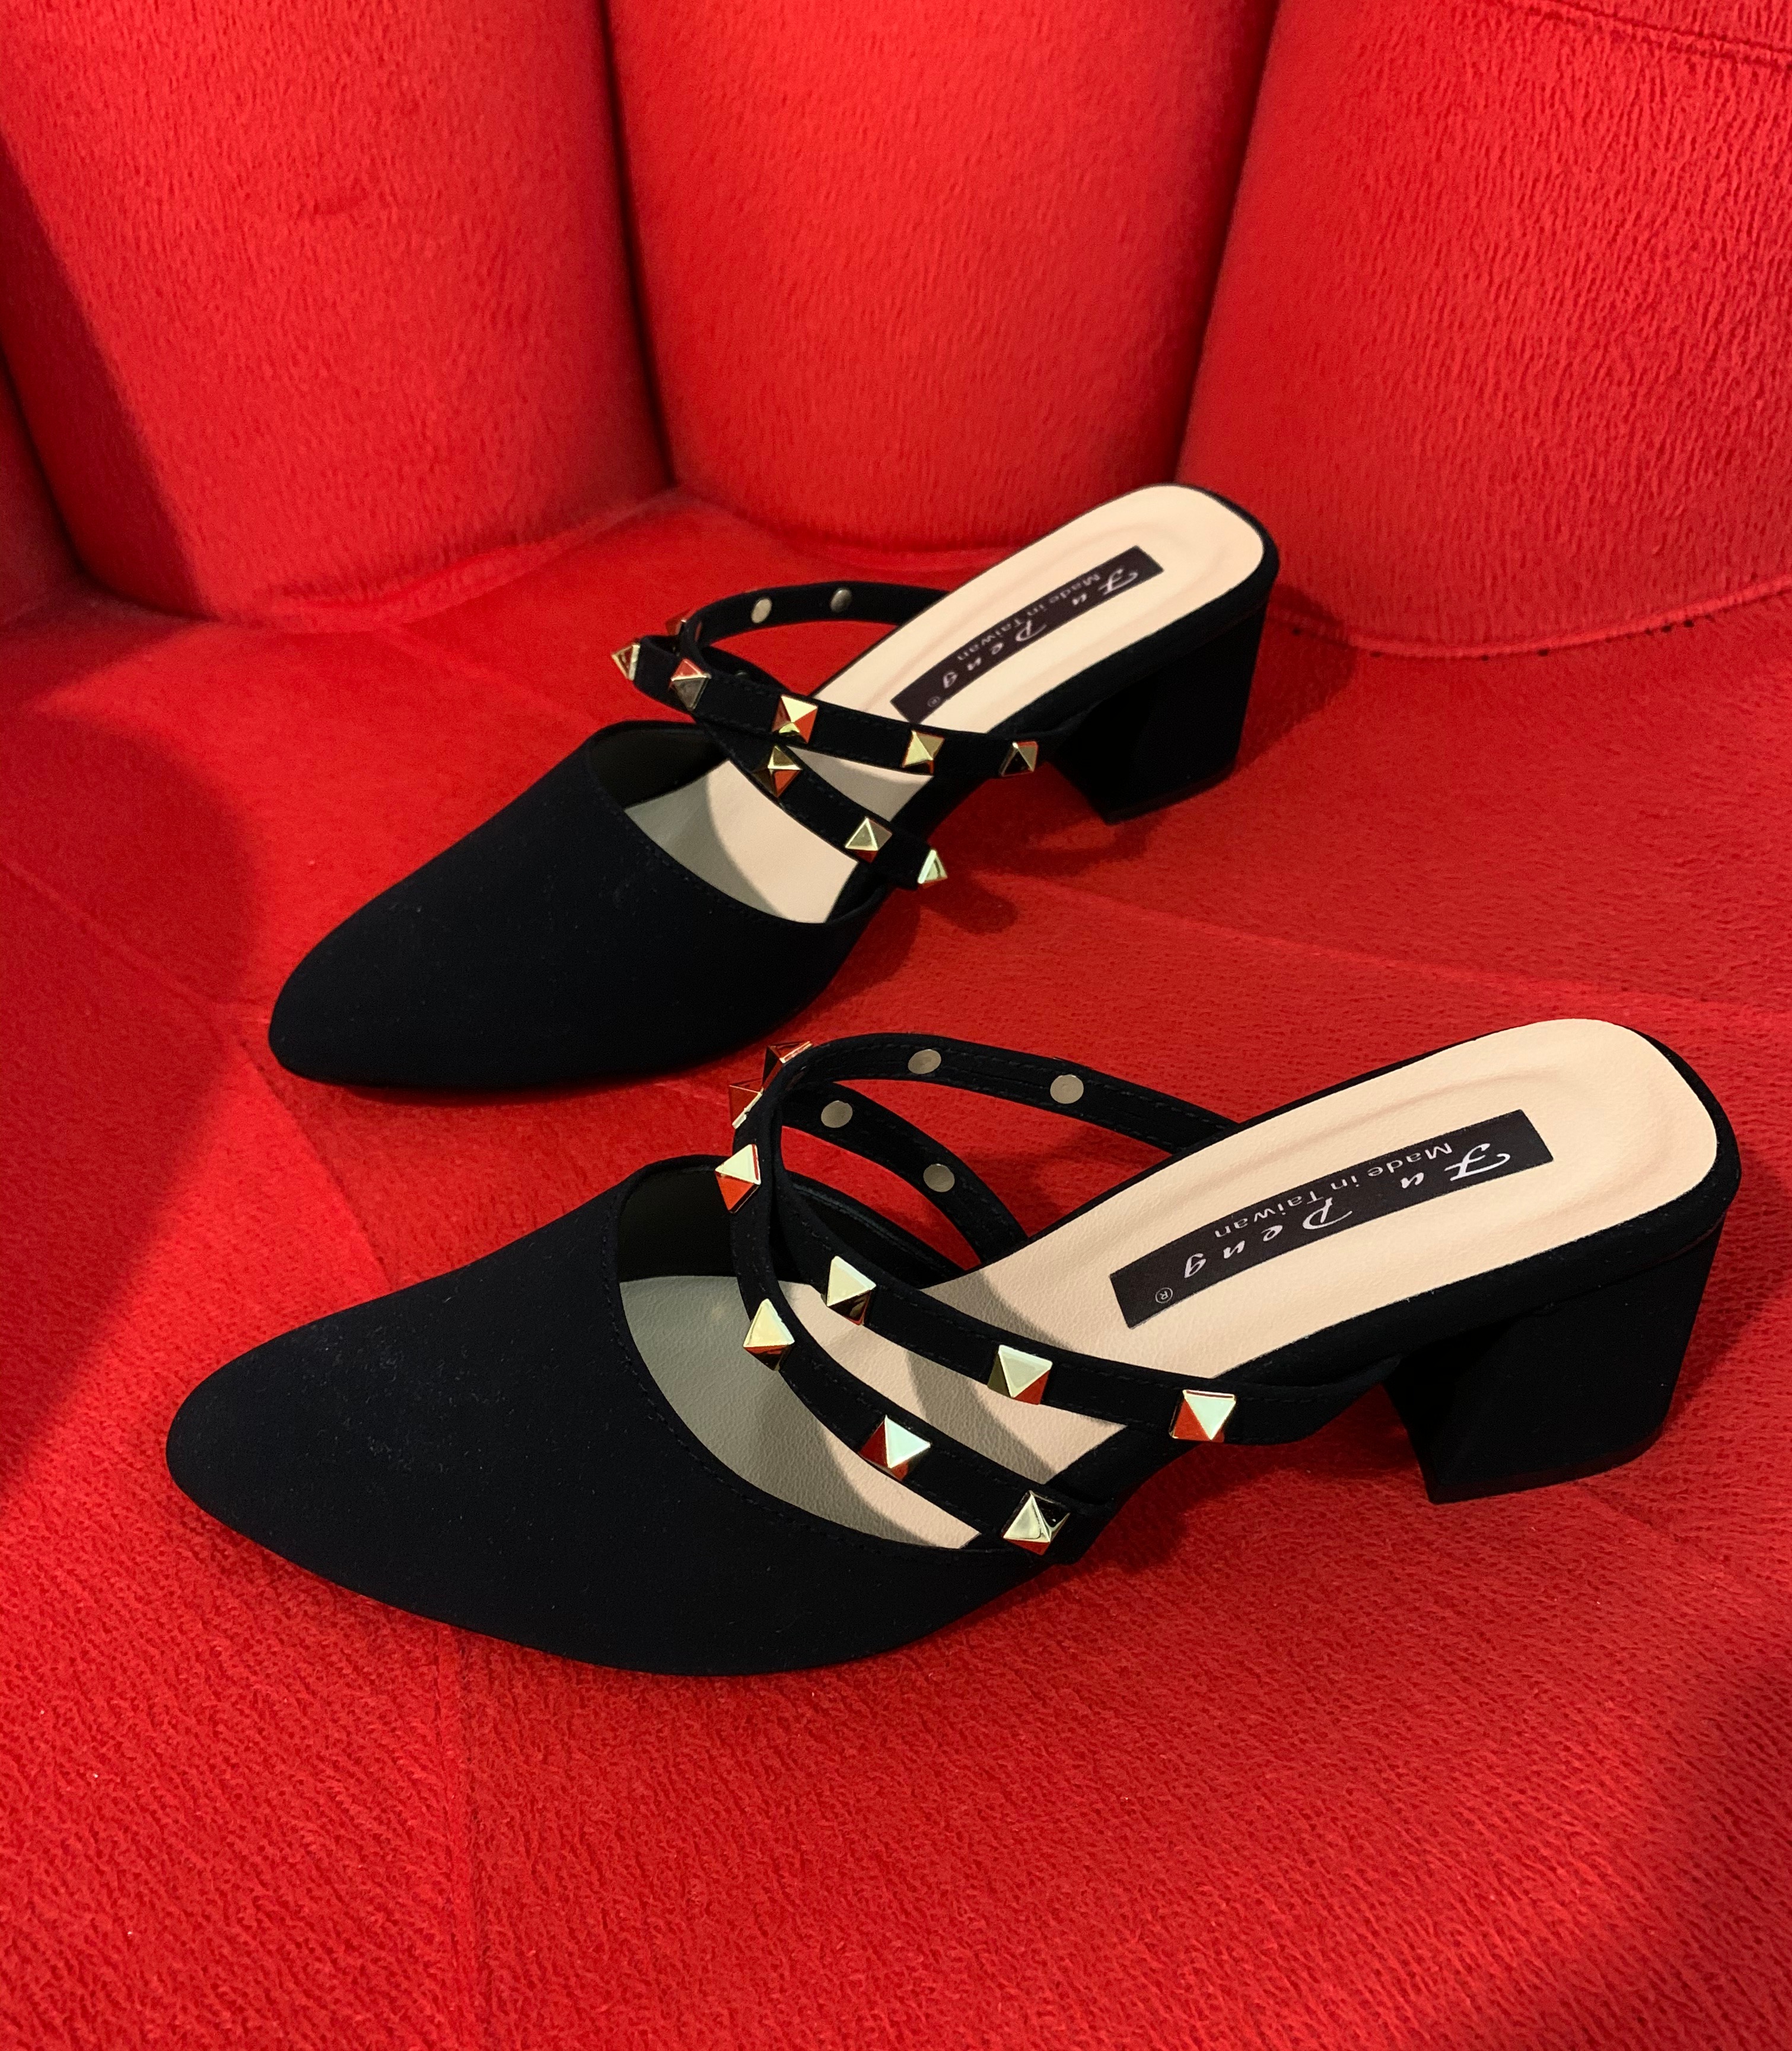 black slip on heels